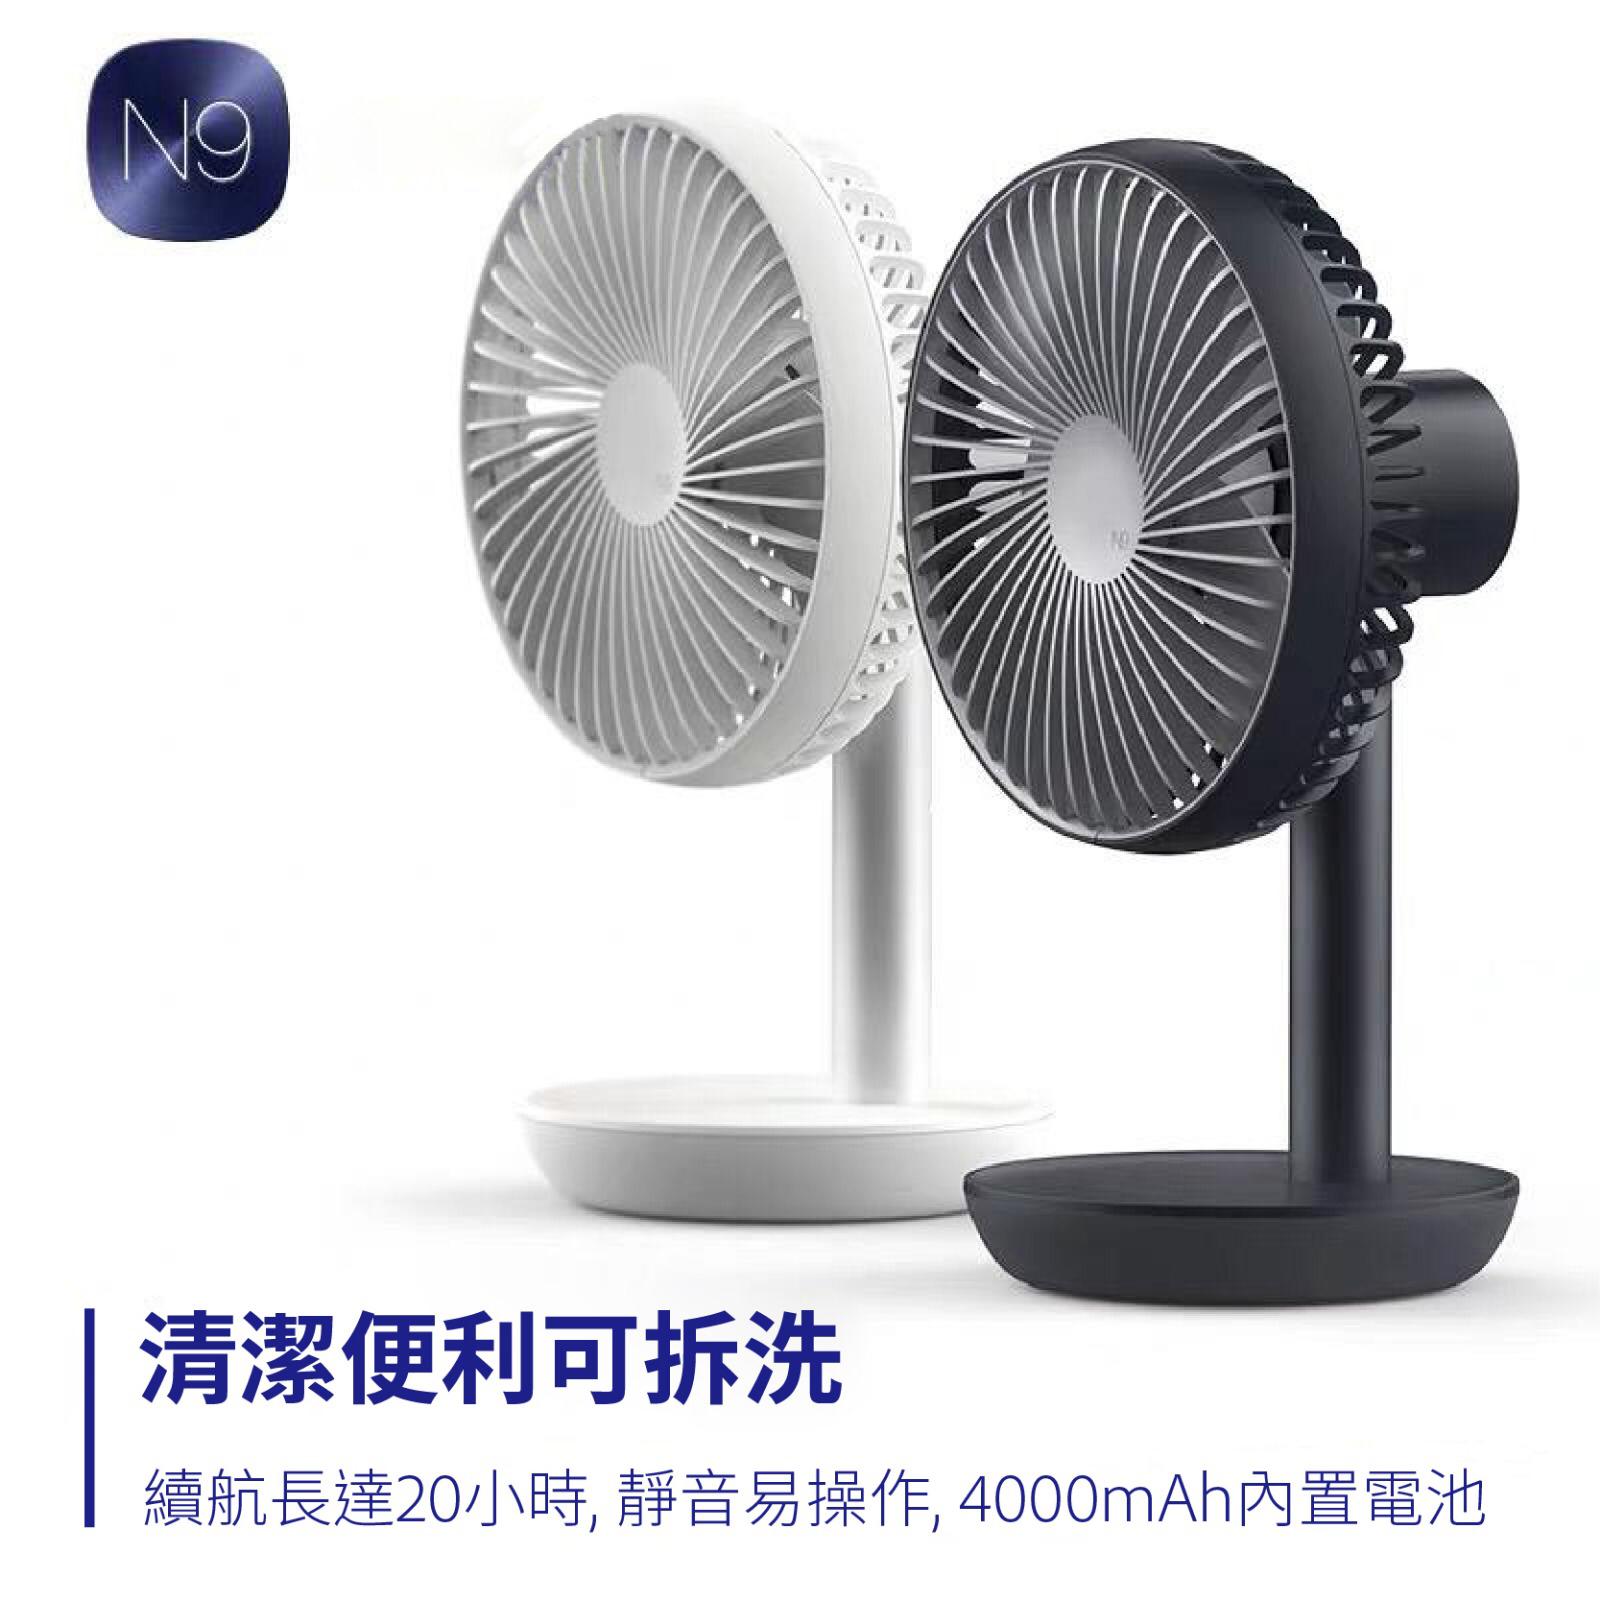 Lumena - N9 FAN STAND2 2nd Generation Cordless Stand Fan | Shaking Head Fan - White 